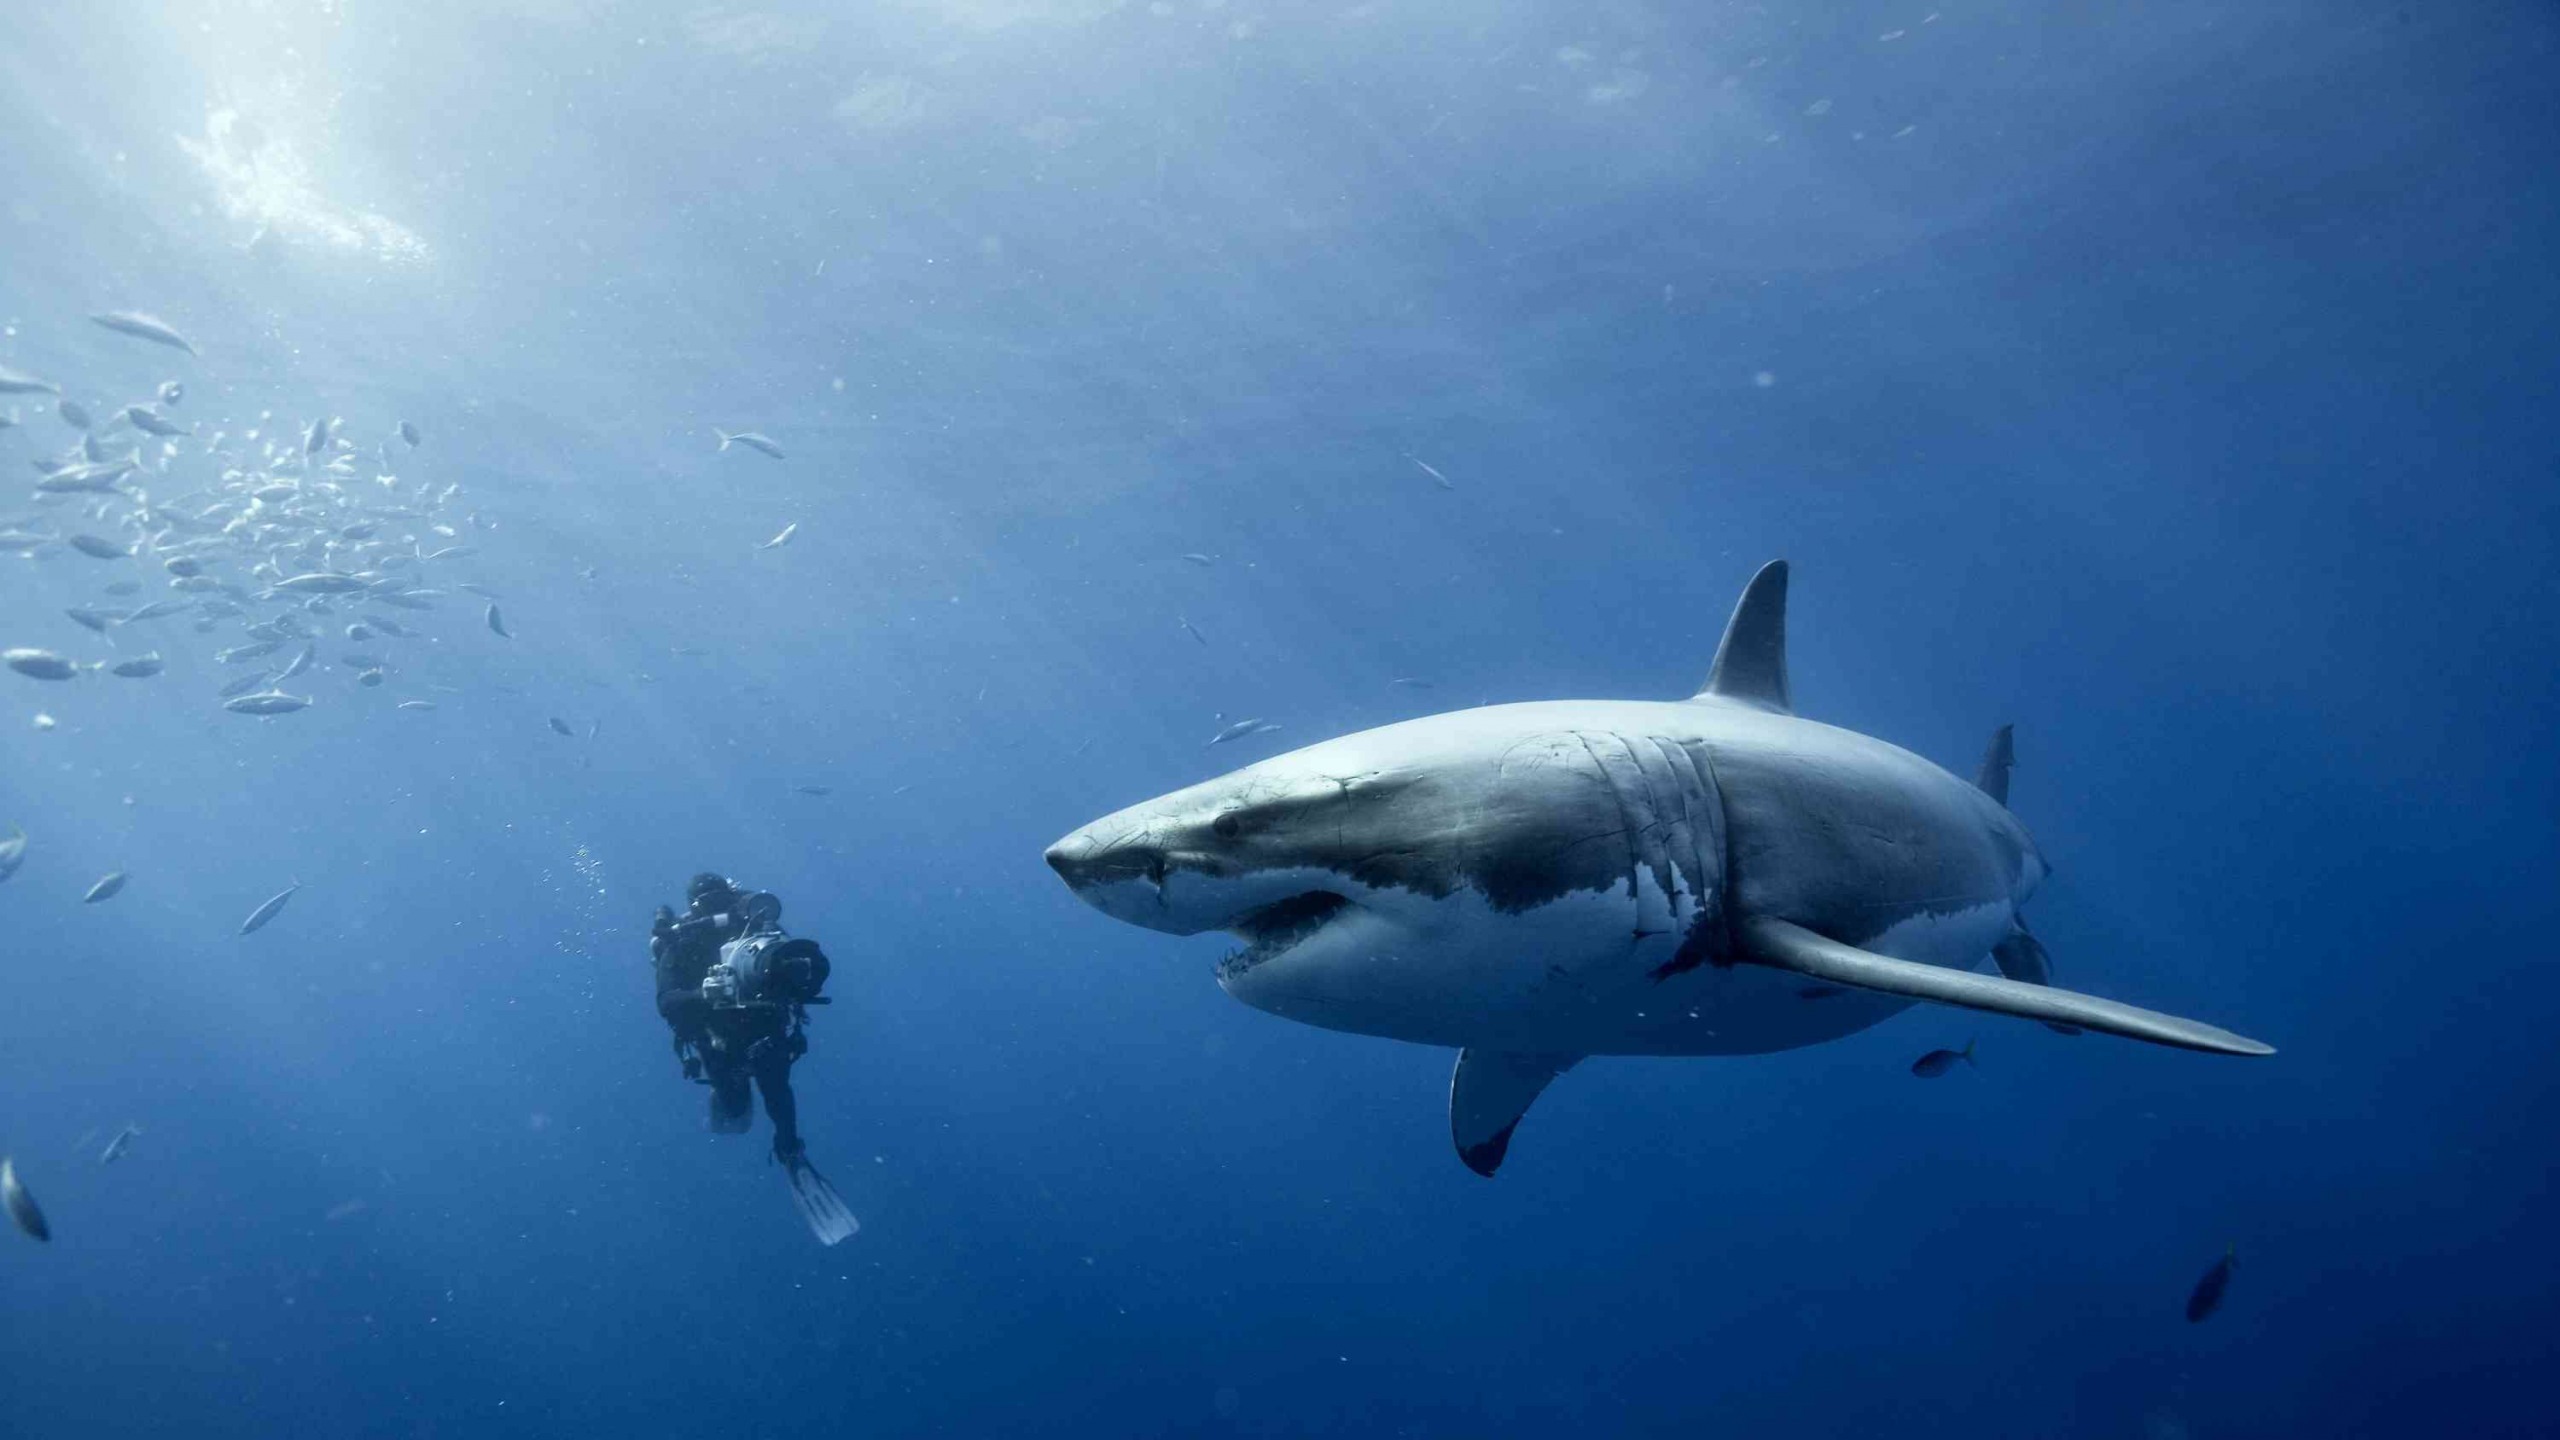 pericolo live wallpaper,pesce,grande squalo bianco,squalo,subacqueo,biologia marina